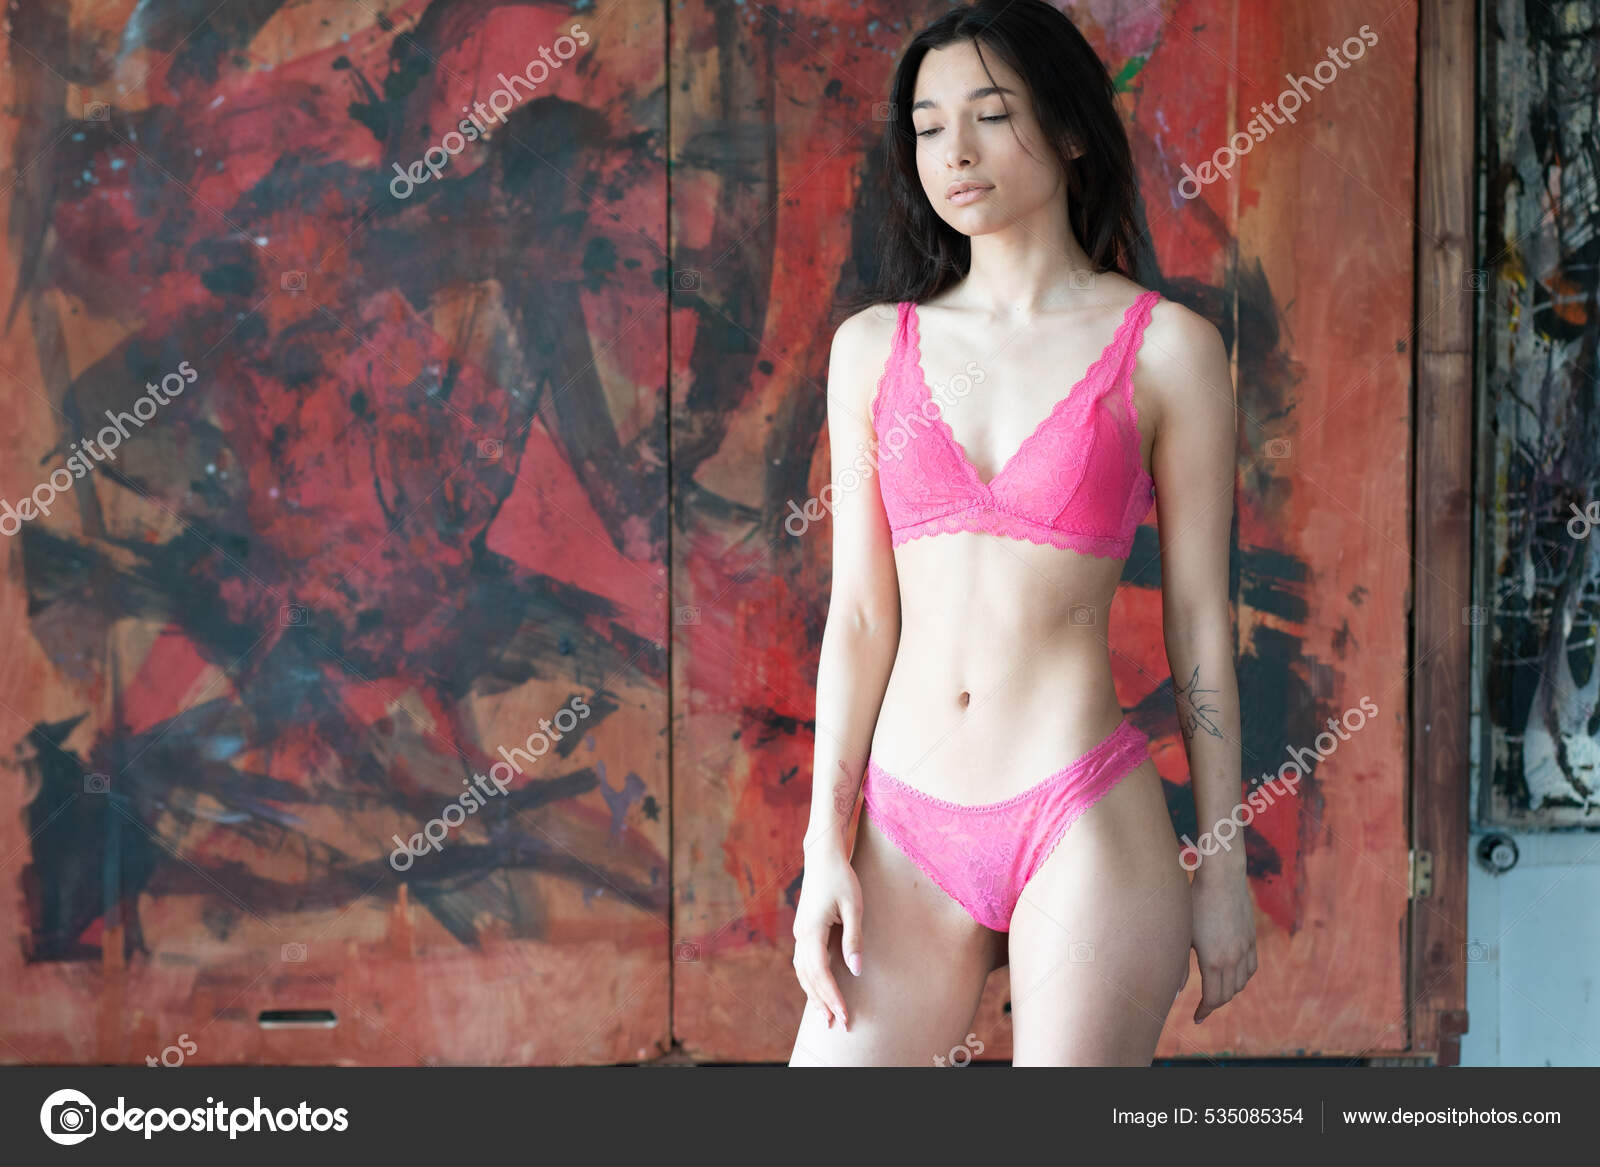 https://st.depositphotos.com/10086424/53508/i/1600/depositphotos_535085354-stock-photo-young-beautiful-woman-posing-red.jpg